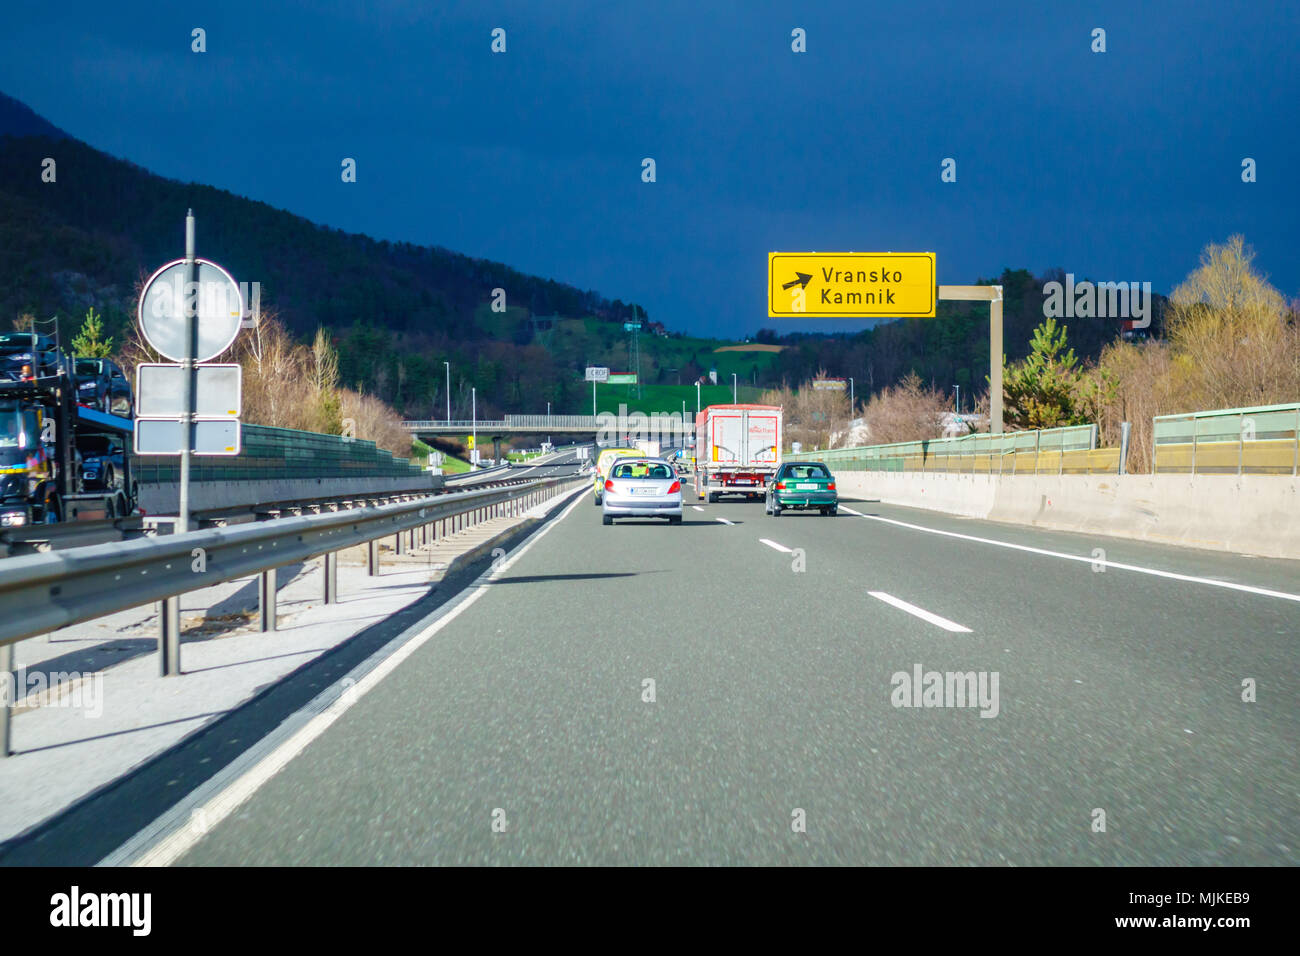 Autoroute sortie Vransko sur l'autoroute A1 en Slovénie Banque D'Images